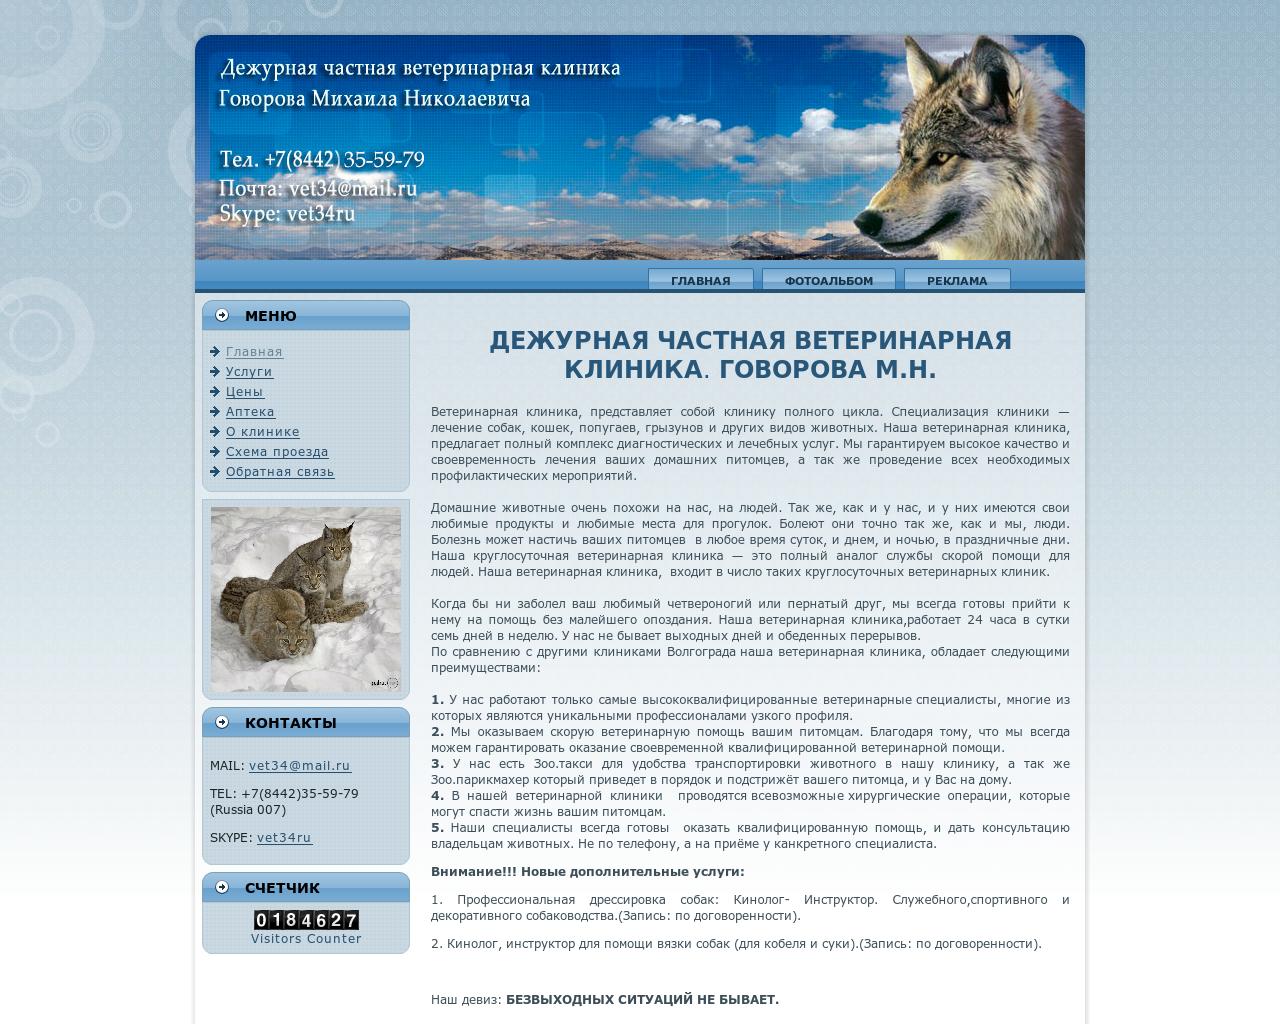 Изображение сайта vet34.ru в разрешении 1280x1024